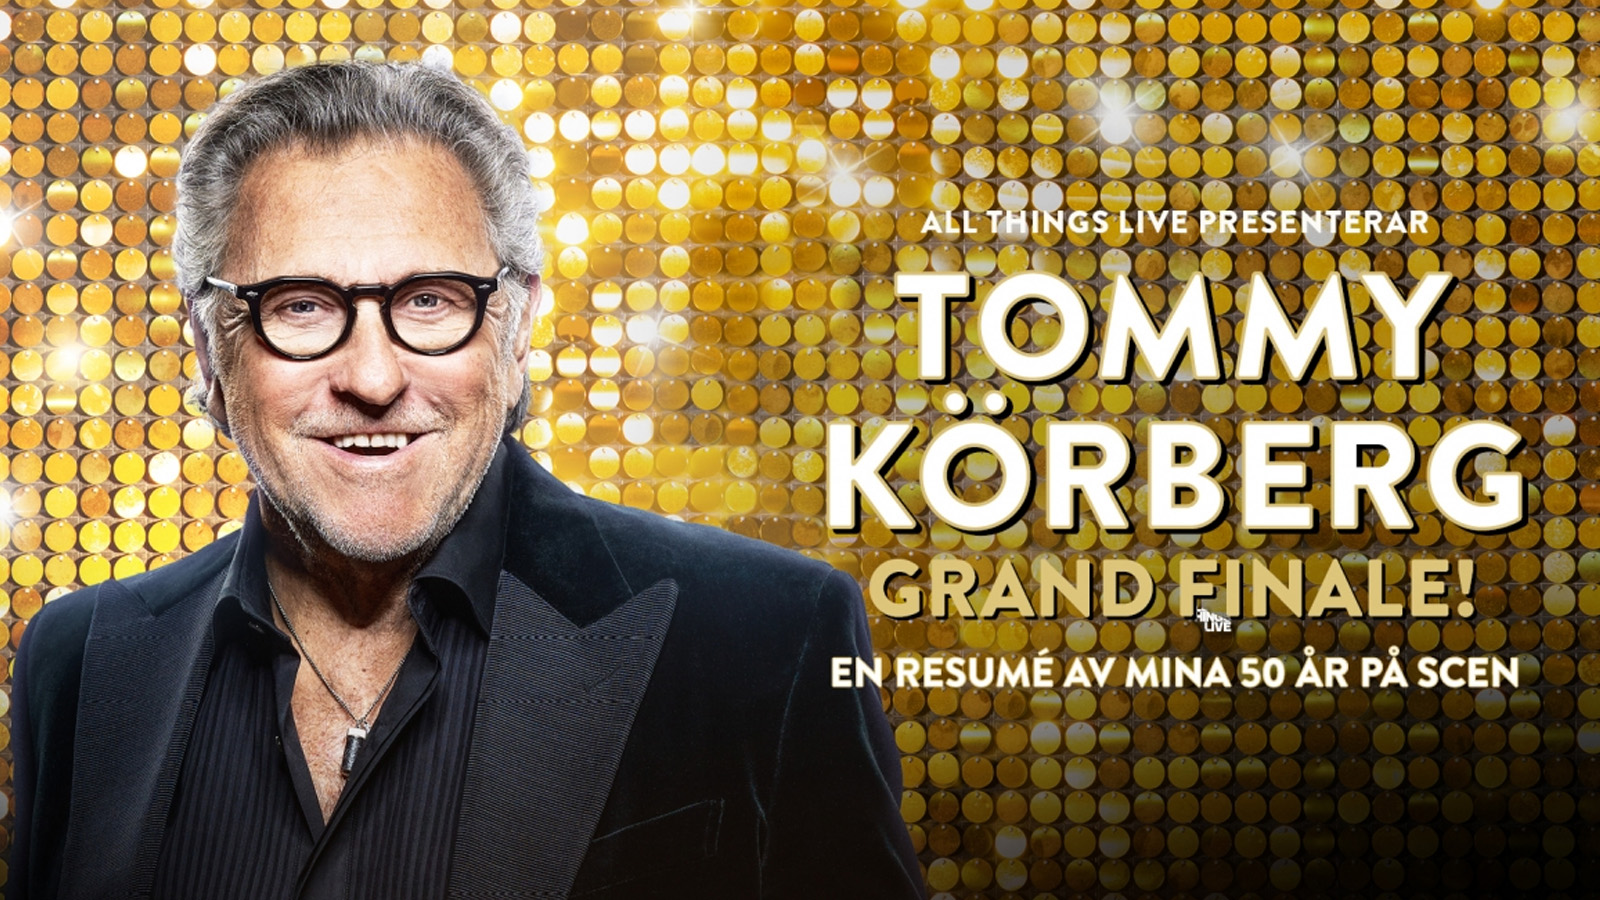 Tommy Körberg Grand Finale!